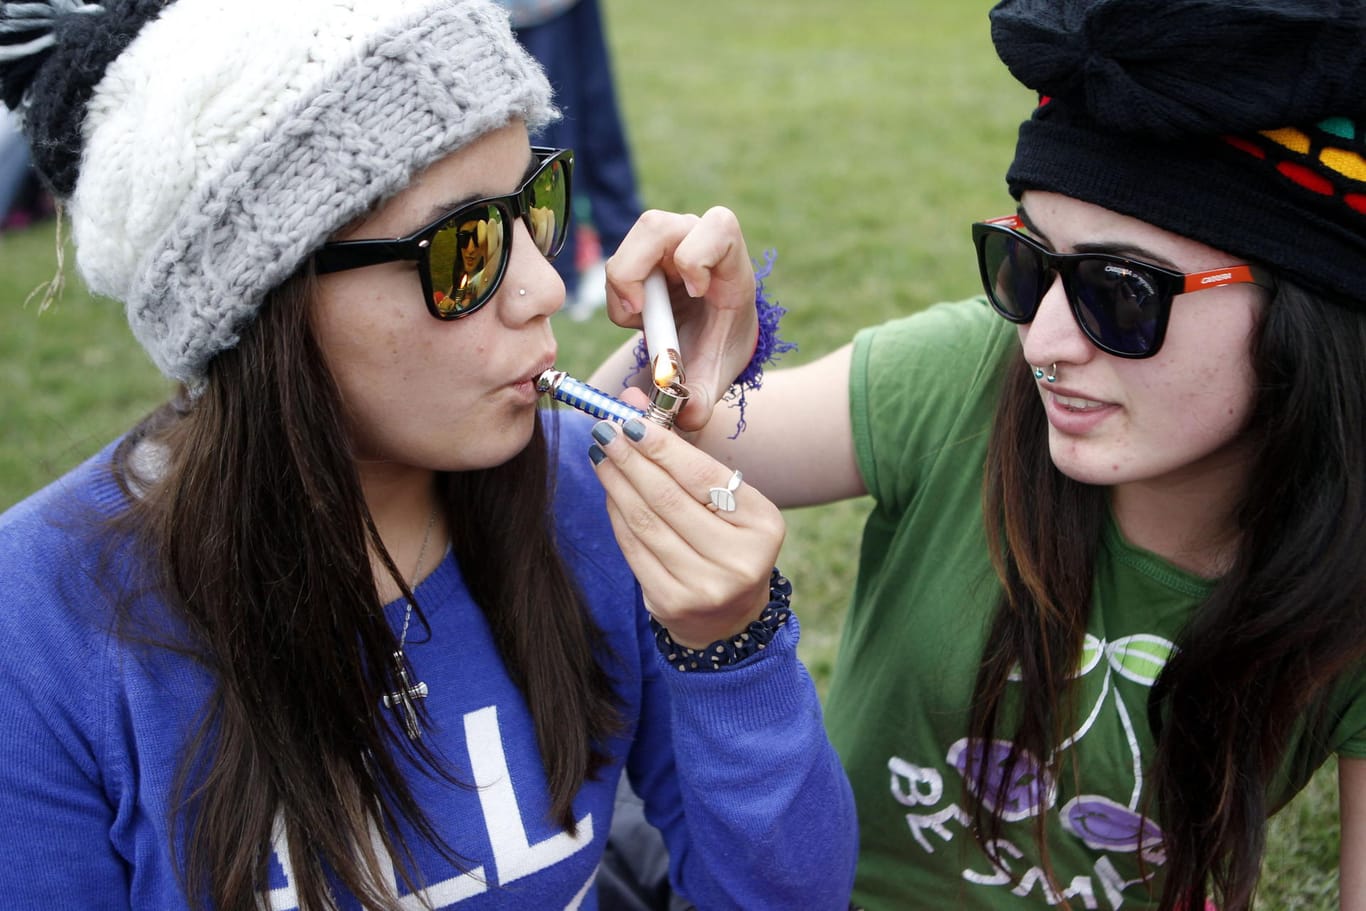 Zwei junge Frauen kiffen nach dem Beschluss der Legalisierung von Marihuana in einem Park in Montevideo.